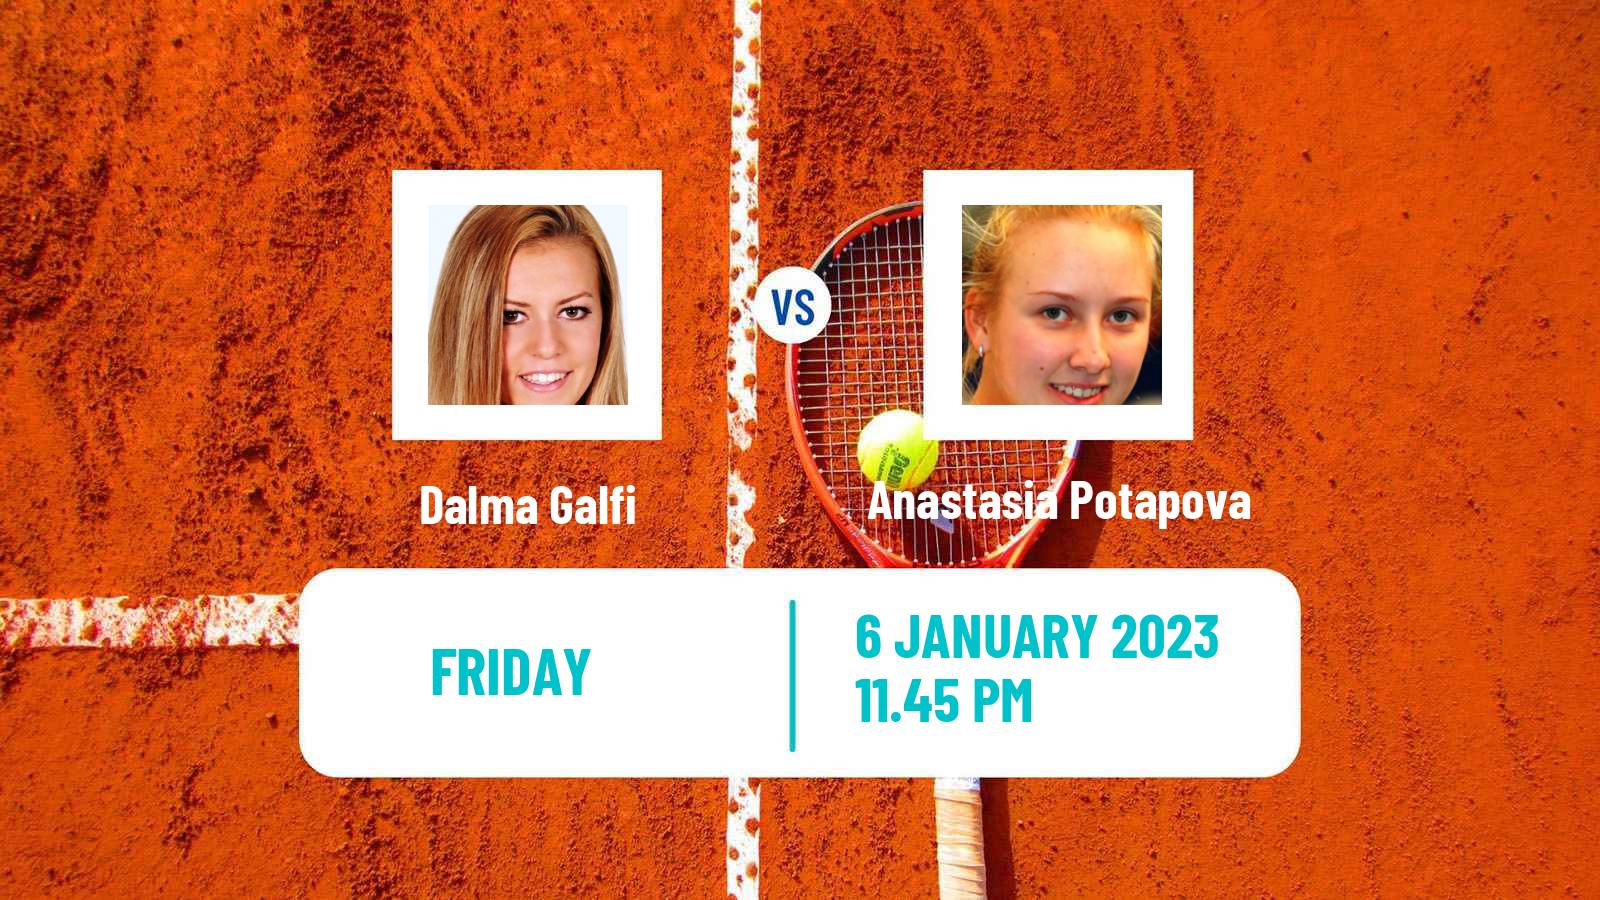 Tennis WTA Adelaide 2 Dalma Galfi - Anastasia Potapova